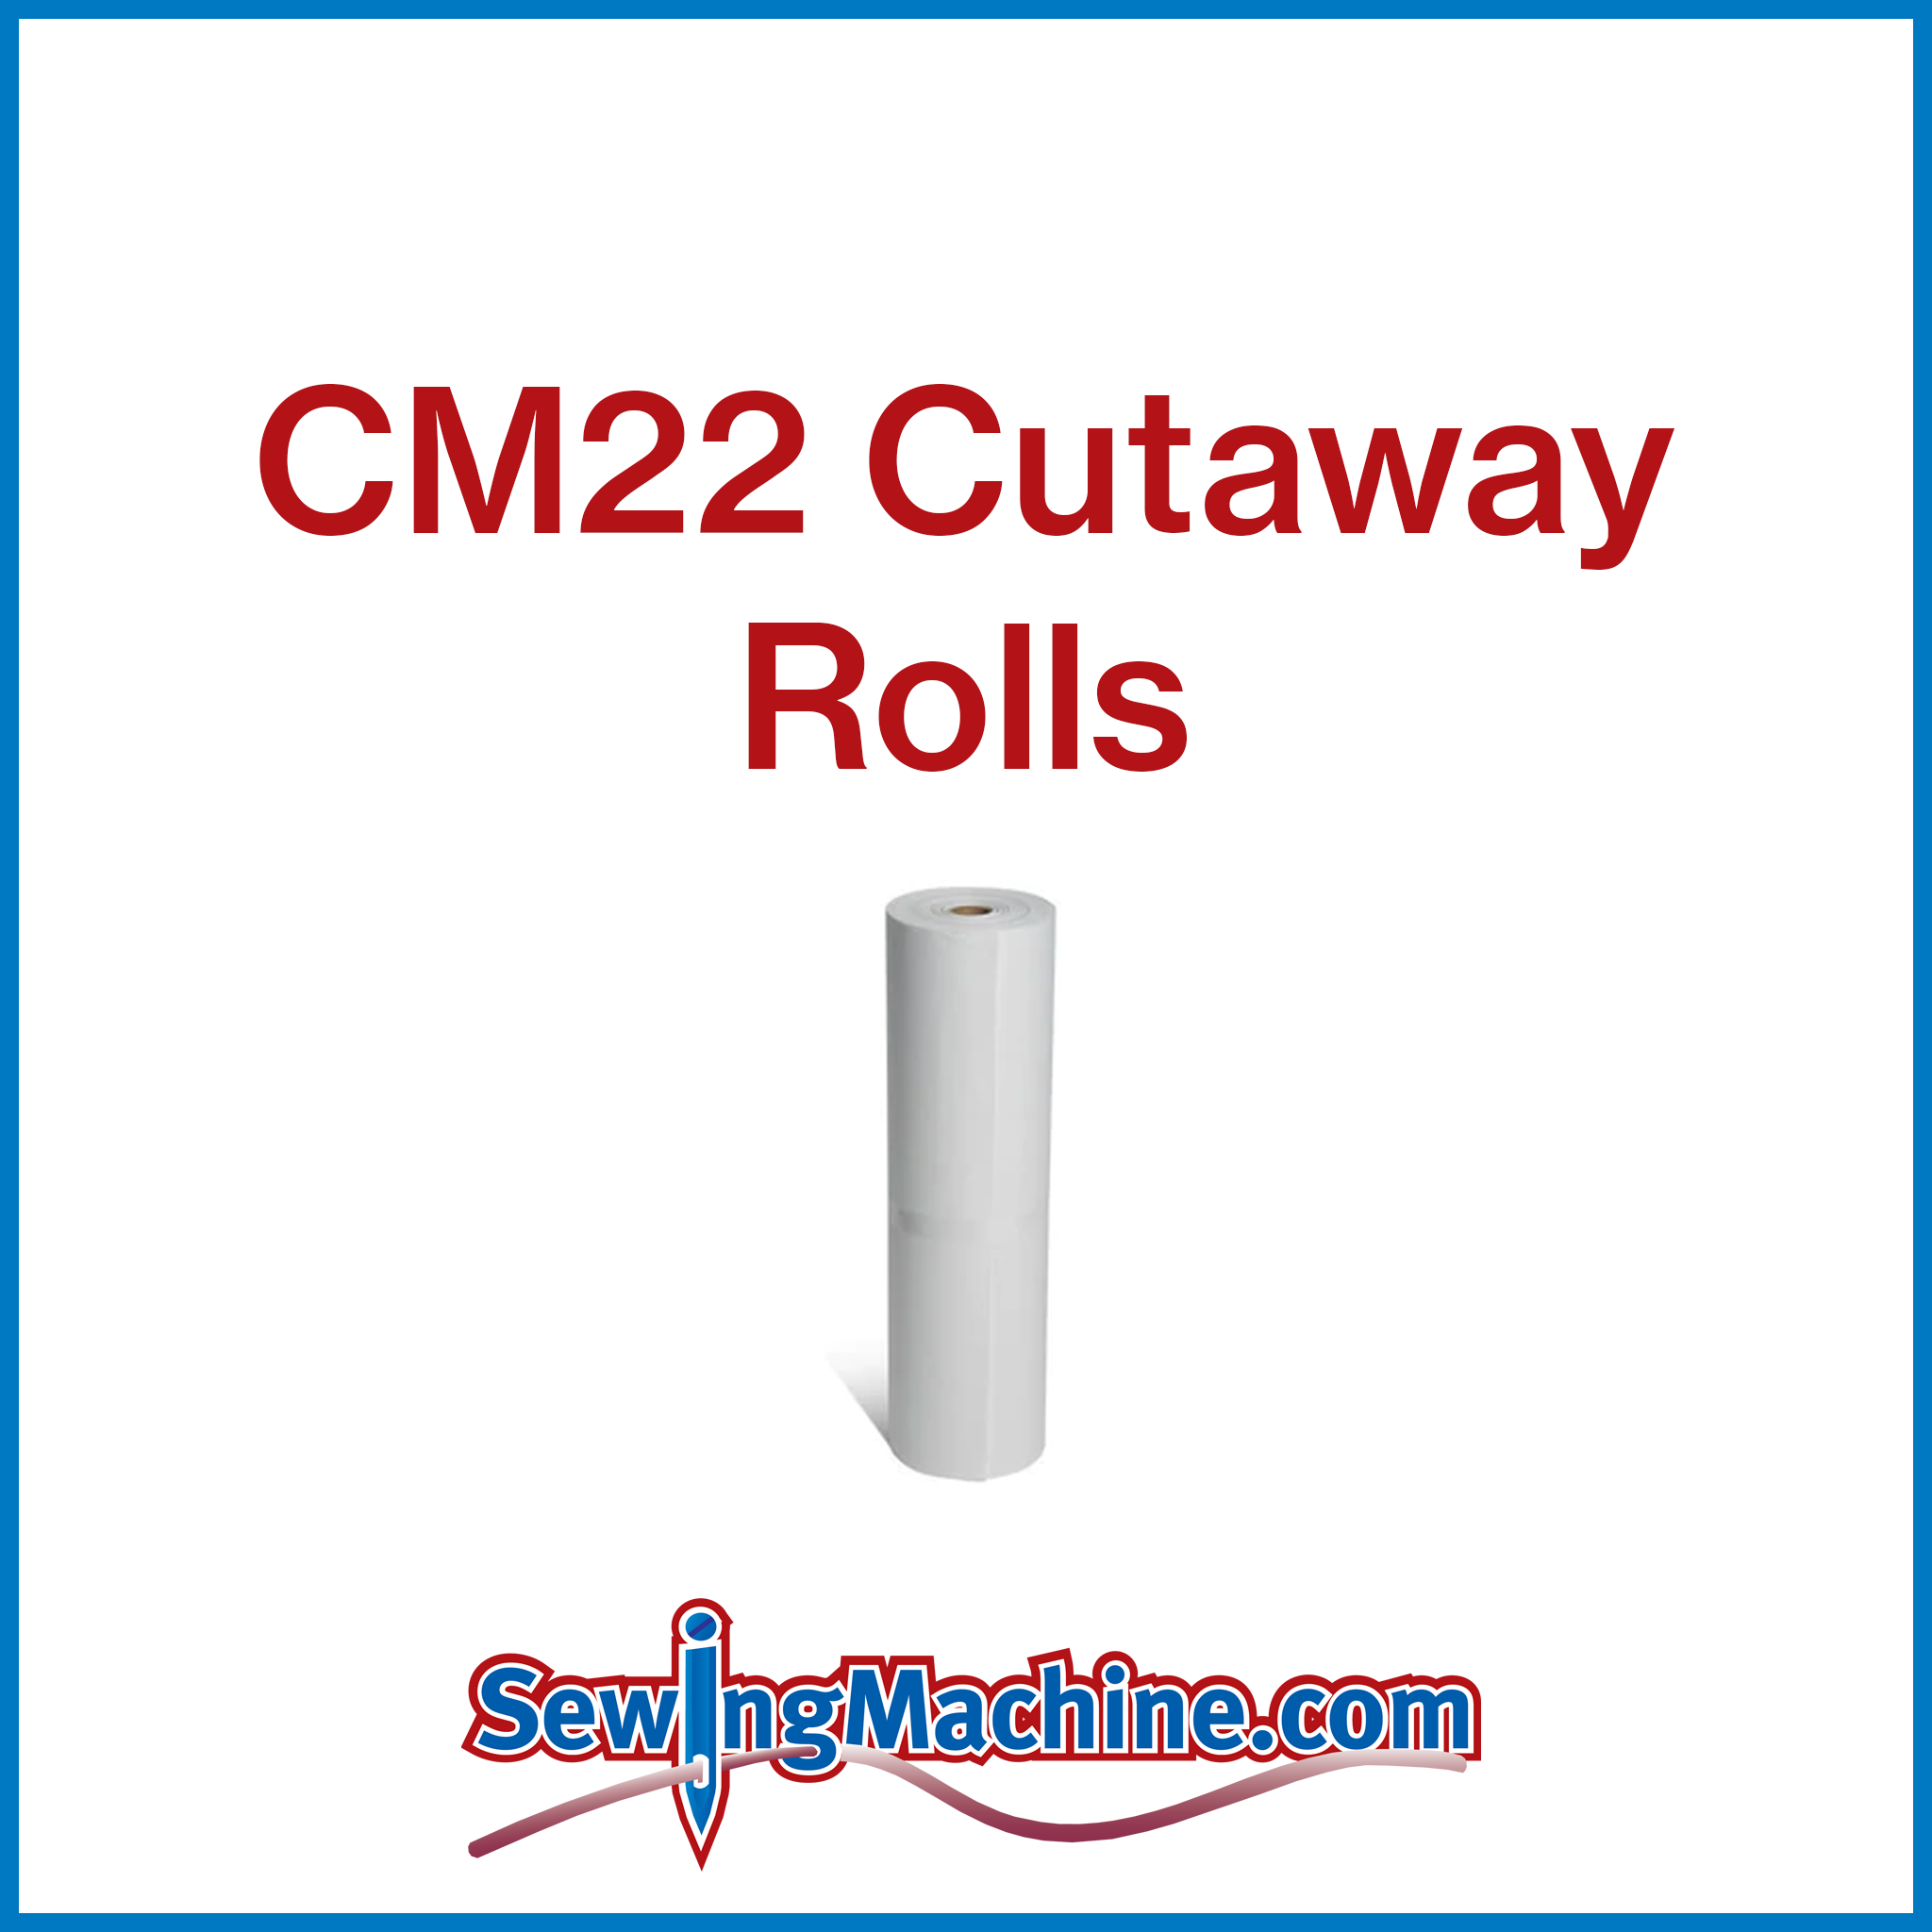 CM22 Cutaway 2.2oz Rolls